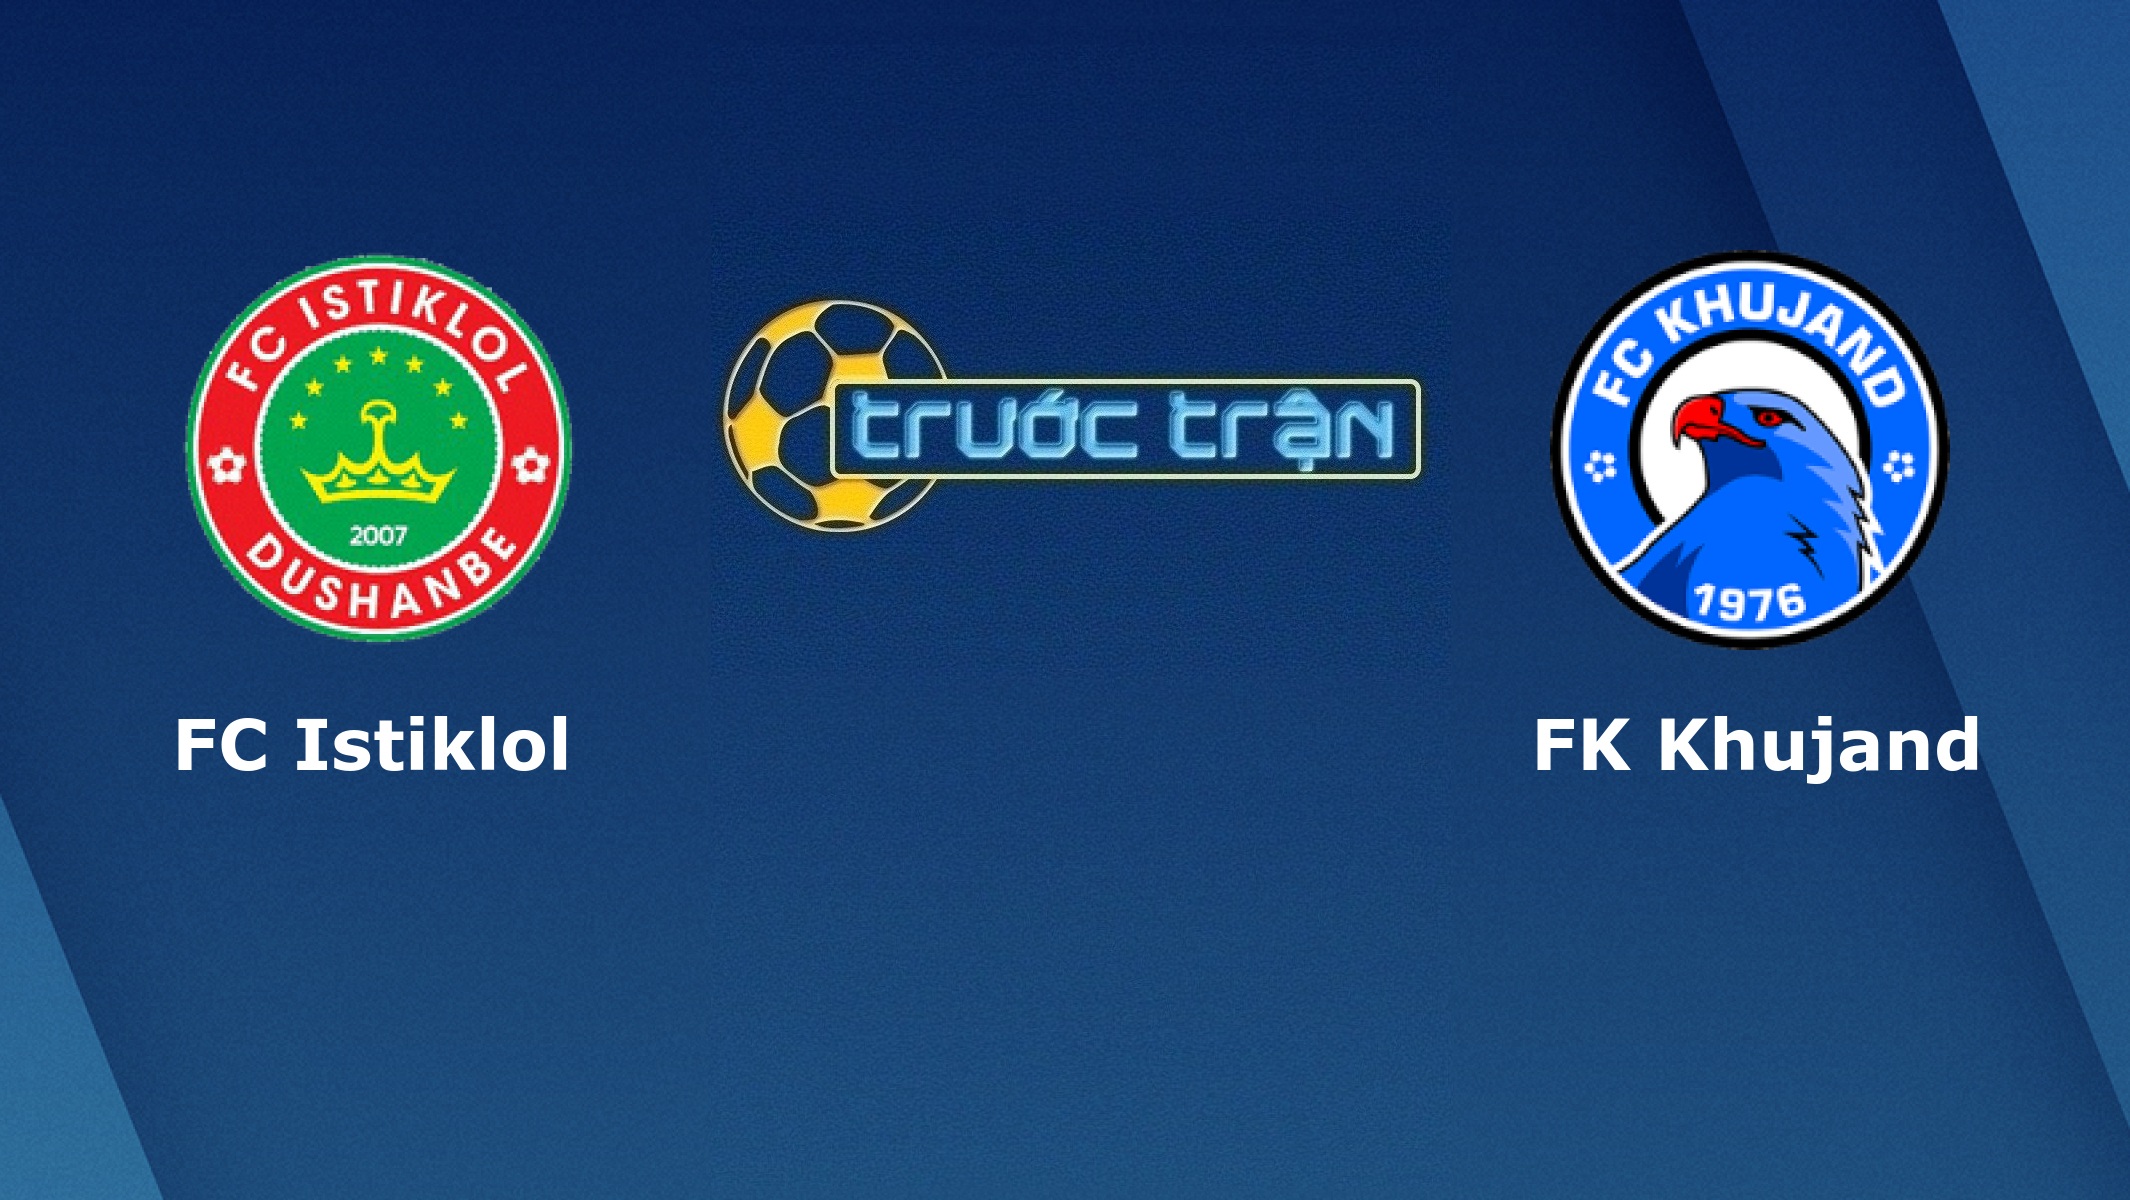 FC Istiklol Dushanbe vs FK Khujand – Tip kèo bóng đá hôm nay – 04/04